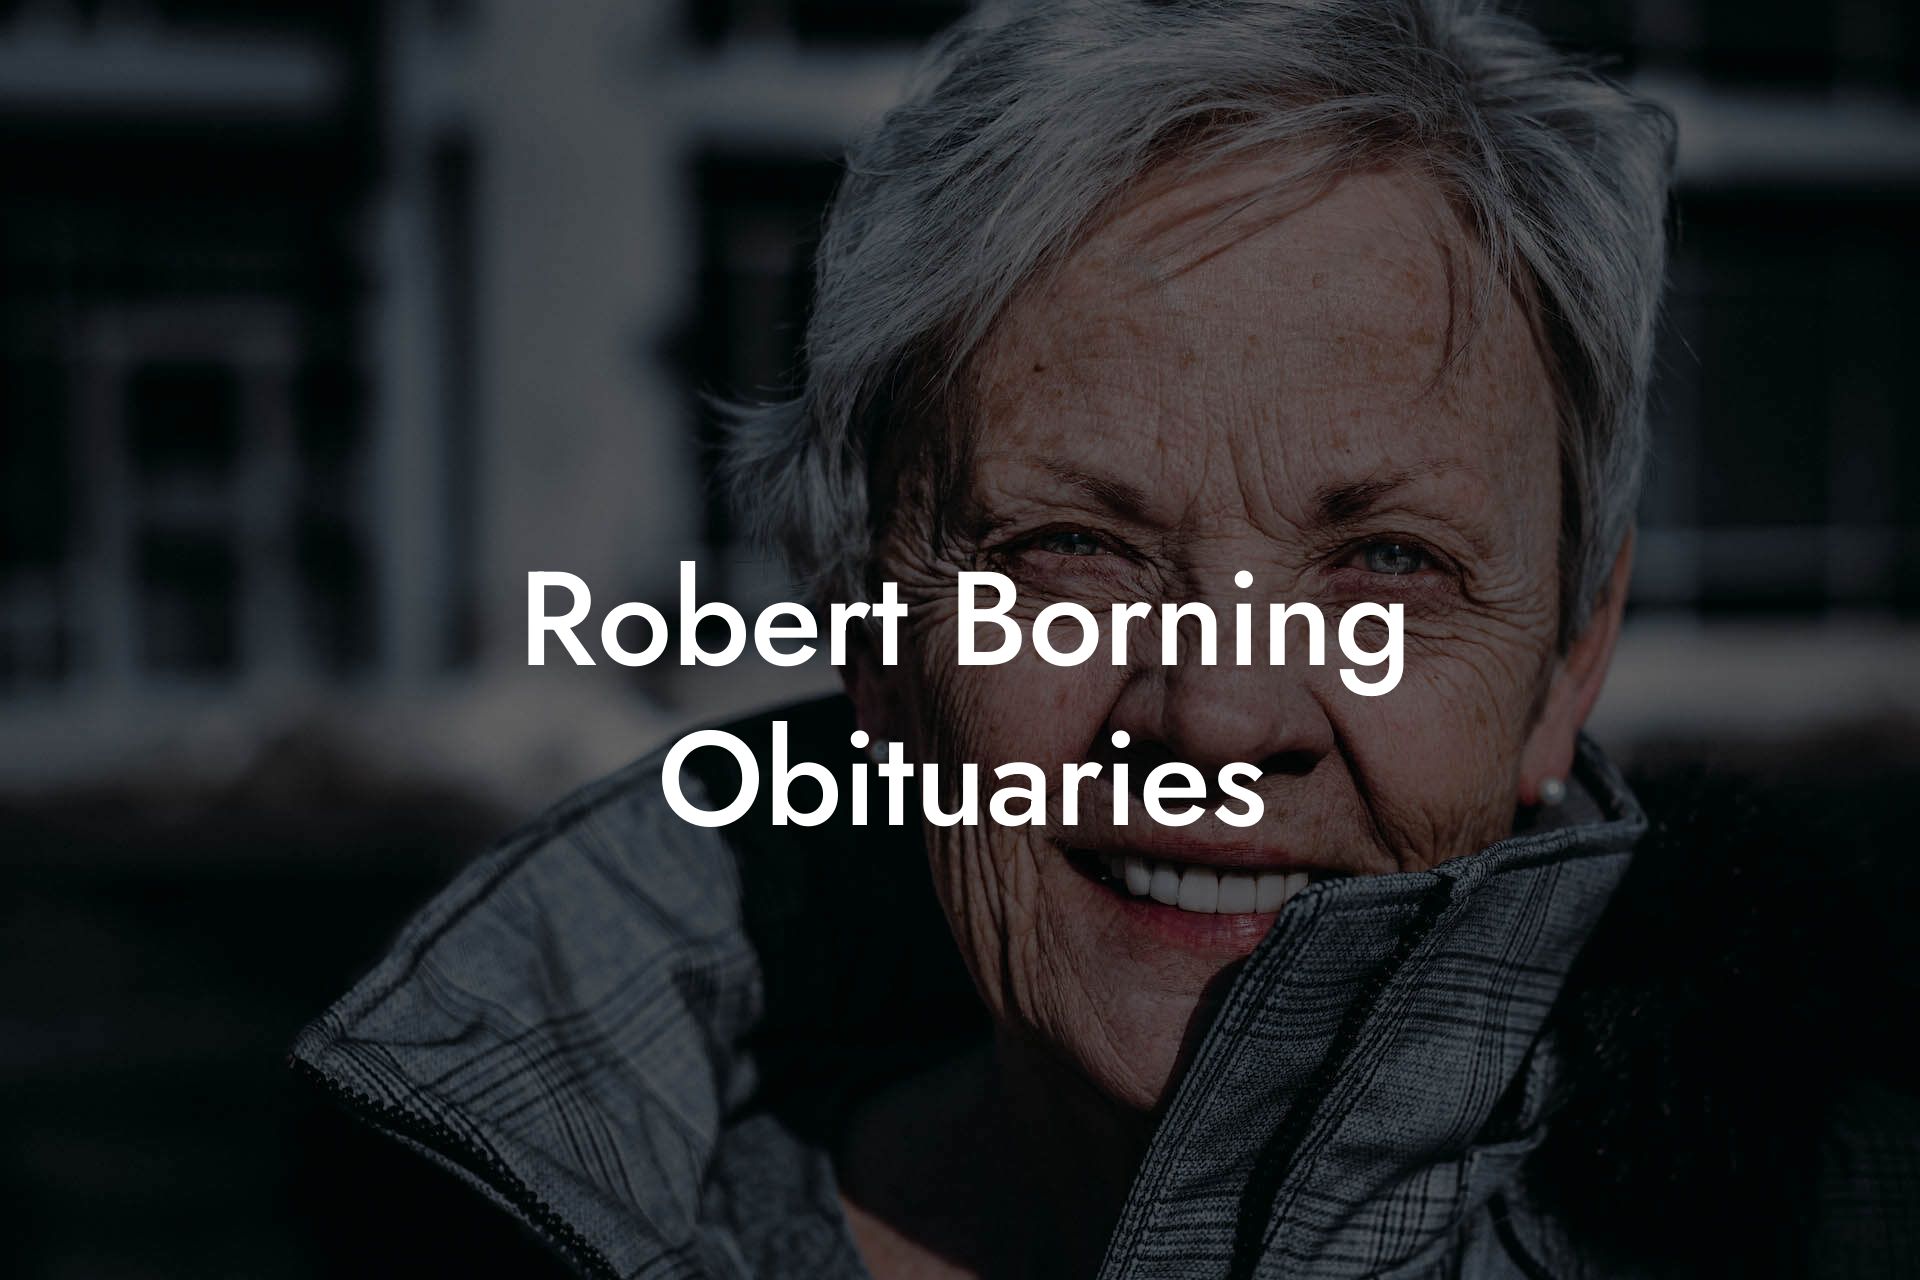 Robert Borning Obituaries